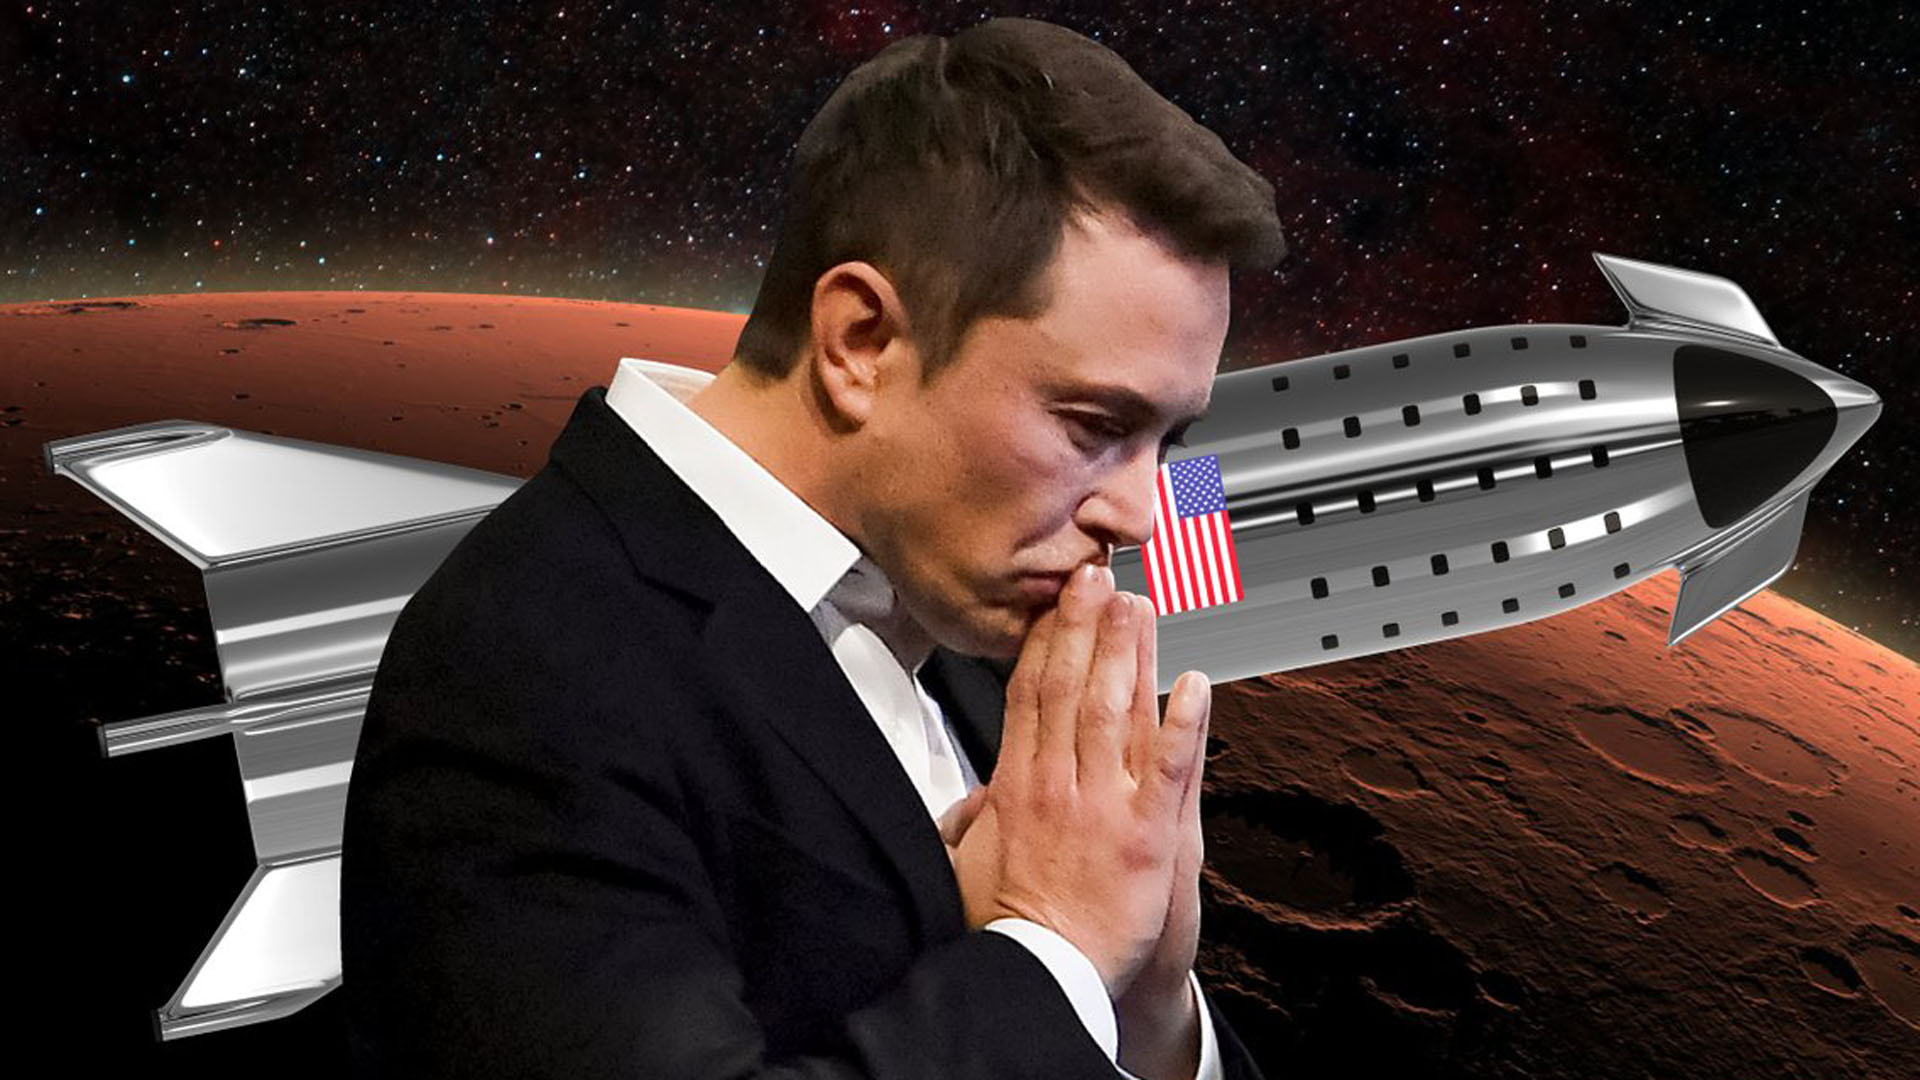 “Si vas a ser enterrado en algún lugar, sería genial nacer en la Tierra y morir en Marte", dice Elon Musk (BI)